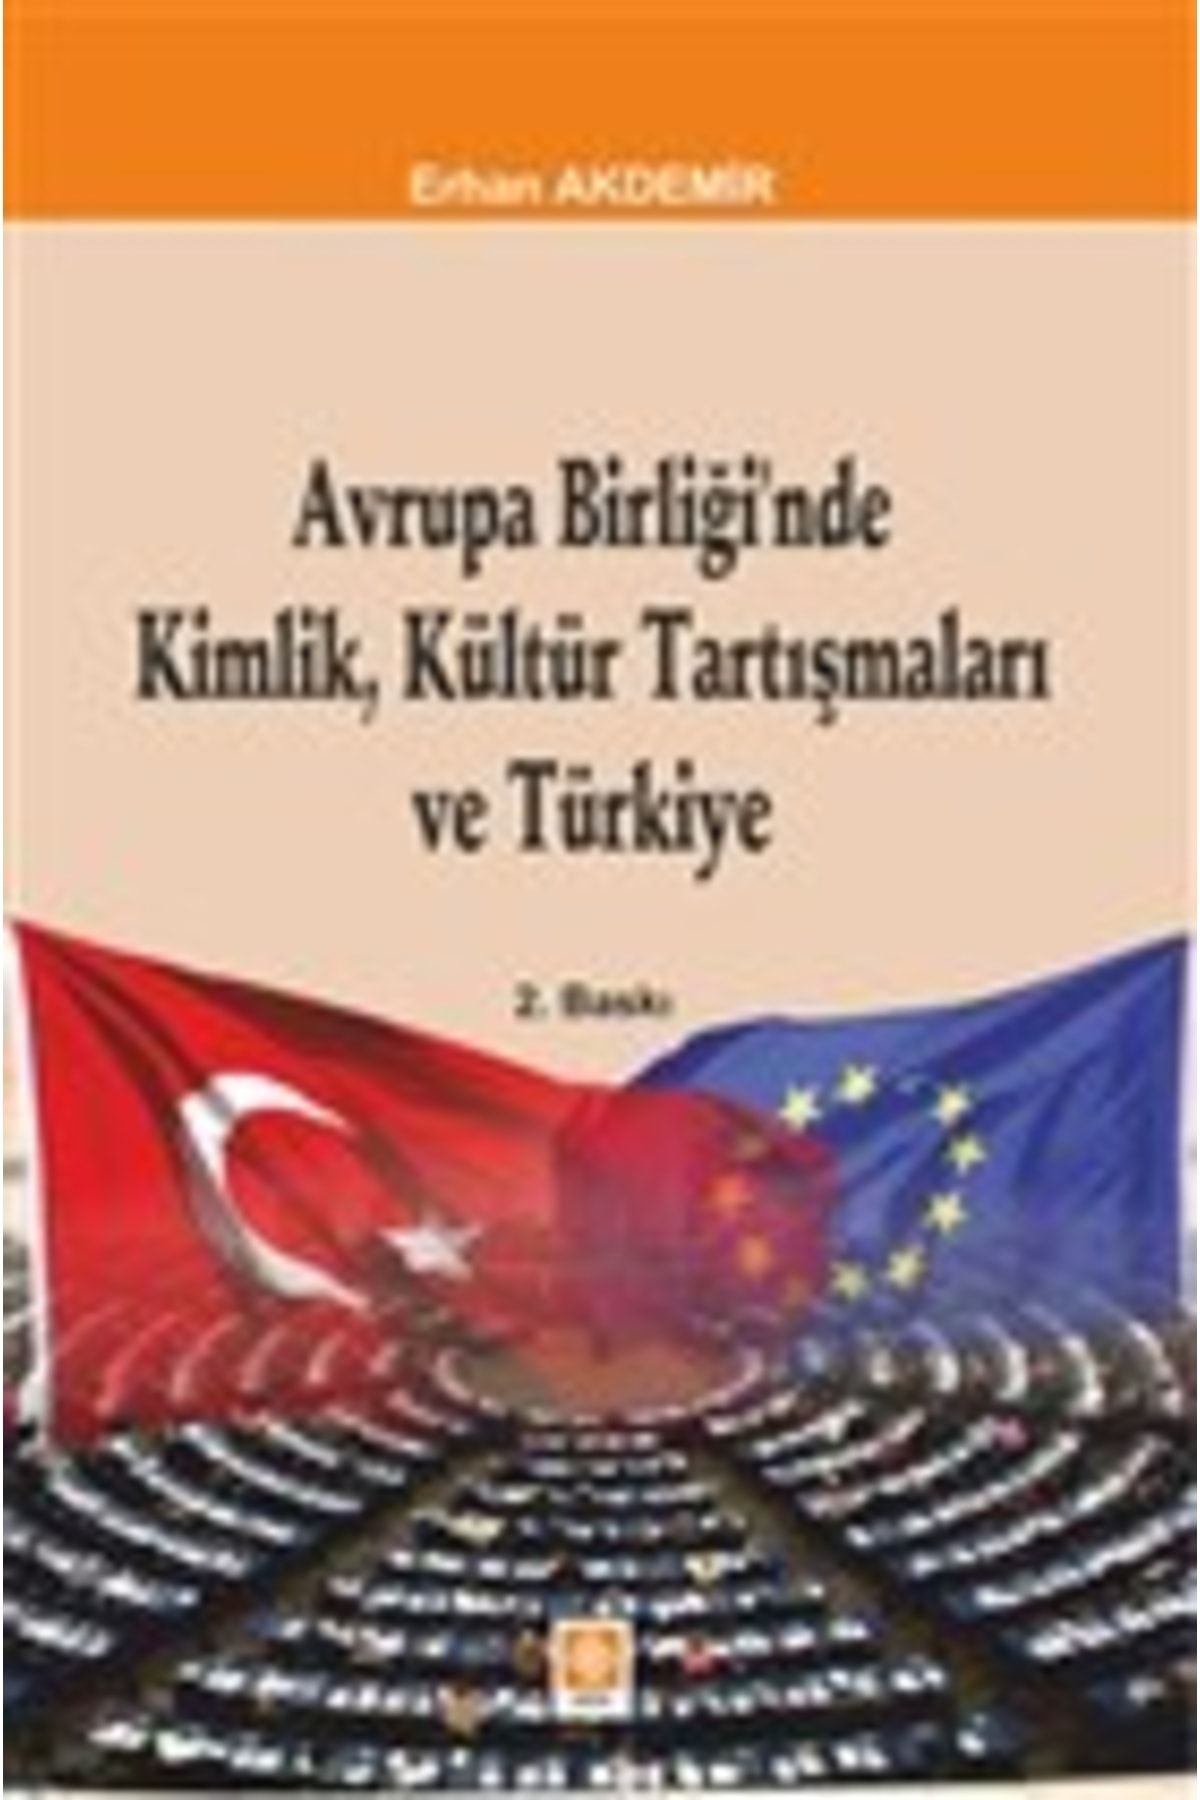 Ekin Basım Yayın Avrupa Birliği'nde Kimlik, Kültür Tartışmaları Ve Türkiye